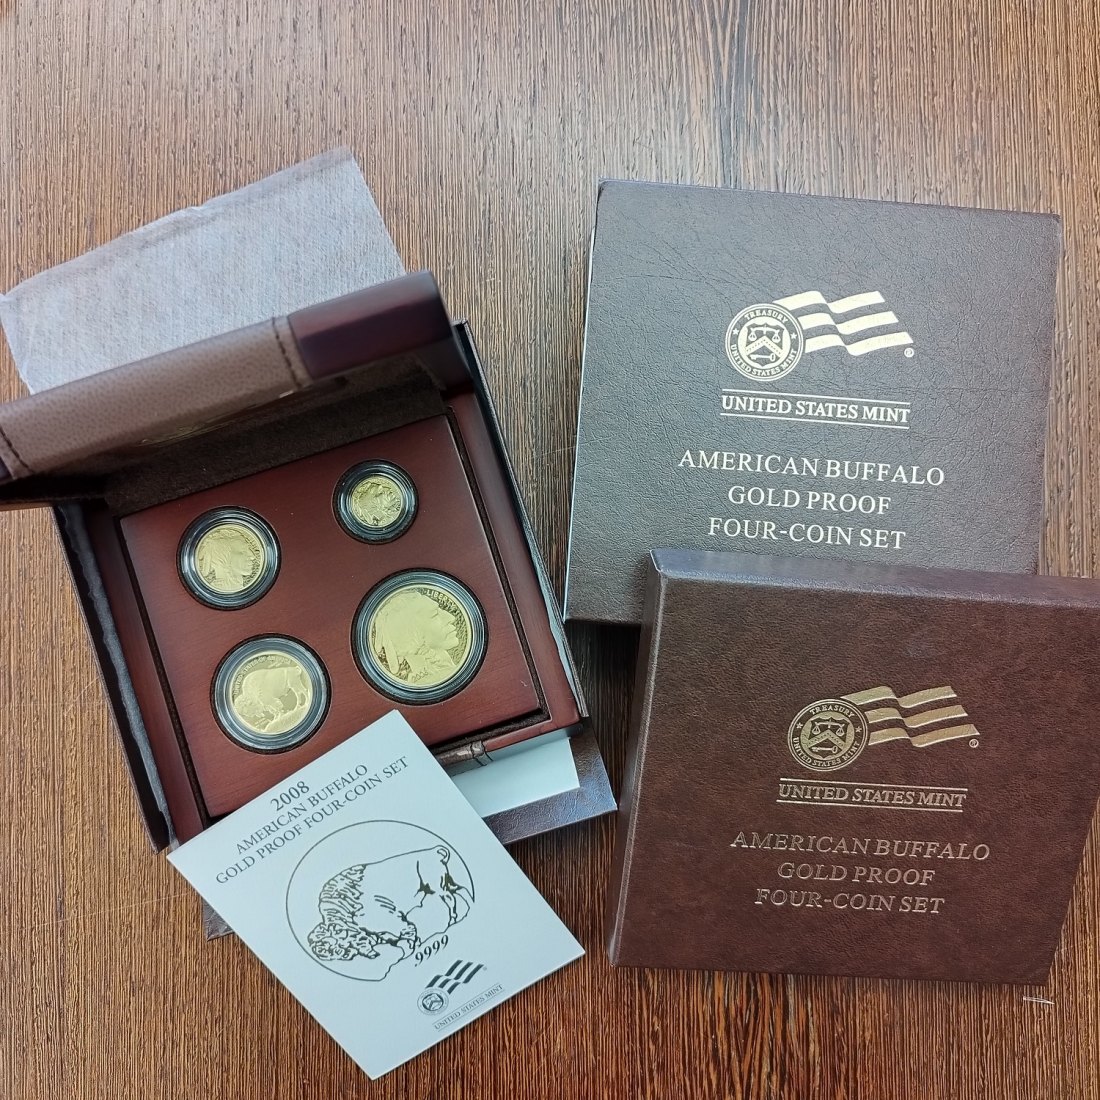 PEUS 1575 USA Insg. 57,54 g Feingold. Incl. Holzbox, Verpackung + Zertifikat Buffalo Proof-Set (4 Münzen) GOLD 2008 W Proof (Kapsel)